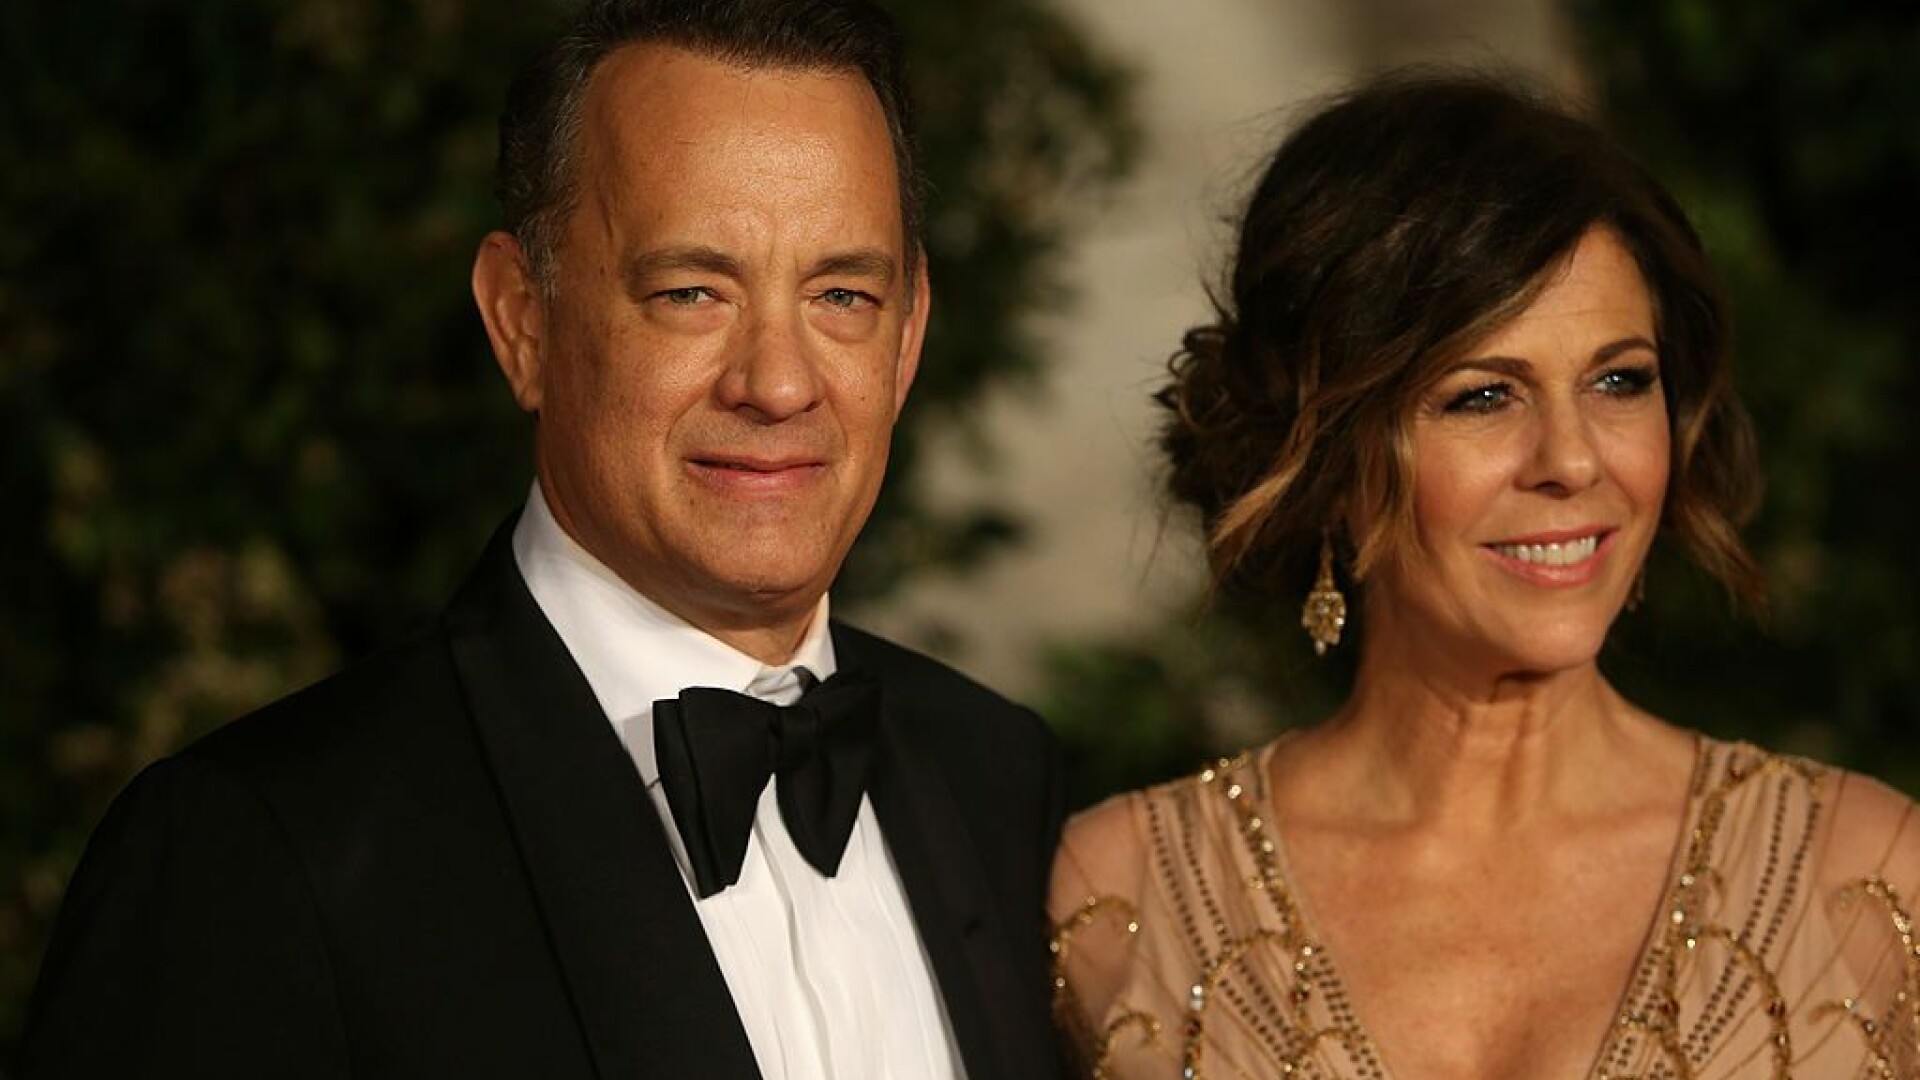 Tom Hanks a ieșit din spital după ce s-a infectat cu noul coronavirus